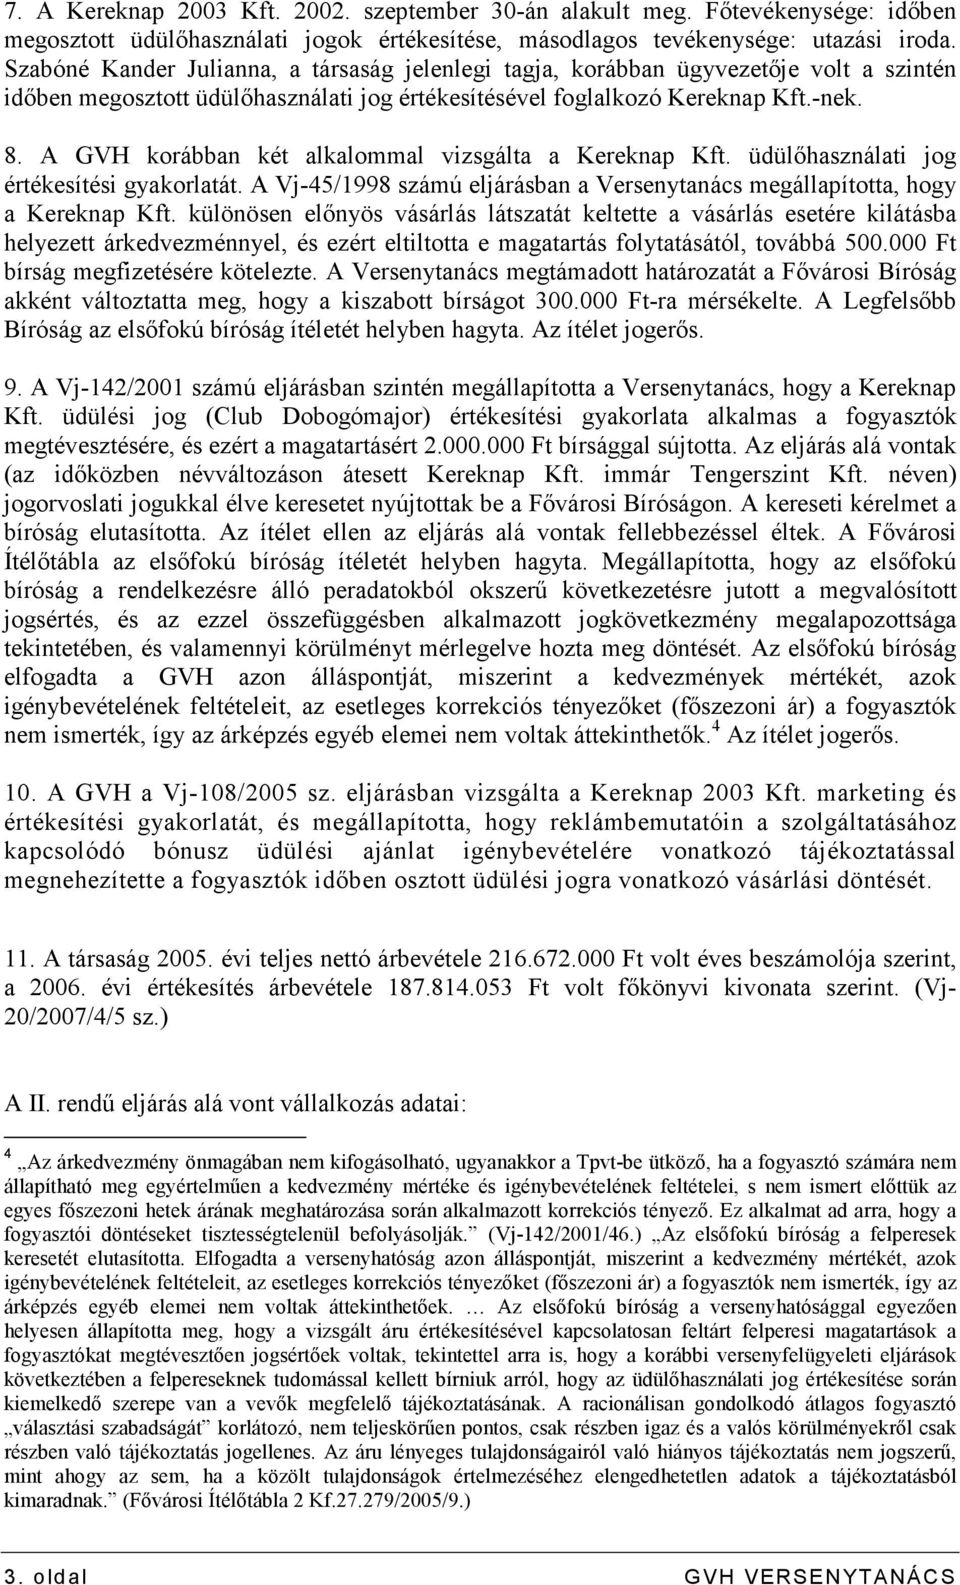 A GVH korábban két alkalommal vizsgálta a Kereknap Kft. üdülıhasználati jog értékesítési gyakorlatát. A Vj-45/1998 számú eljárásban a Versenytanács megállapította, hogy a Kereknap Kft.